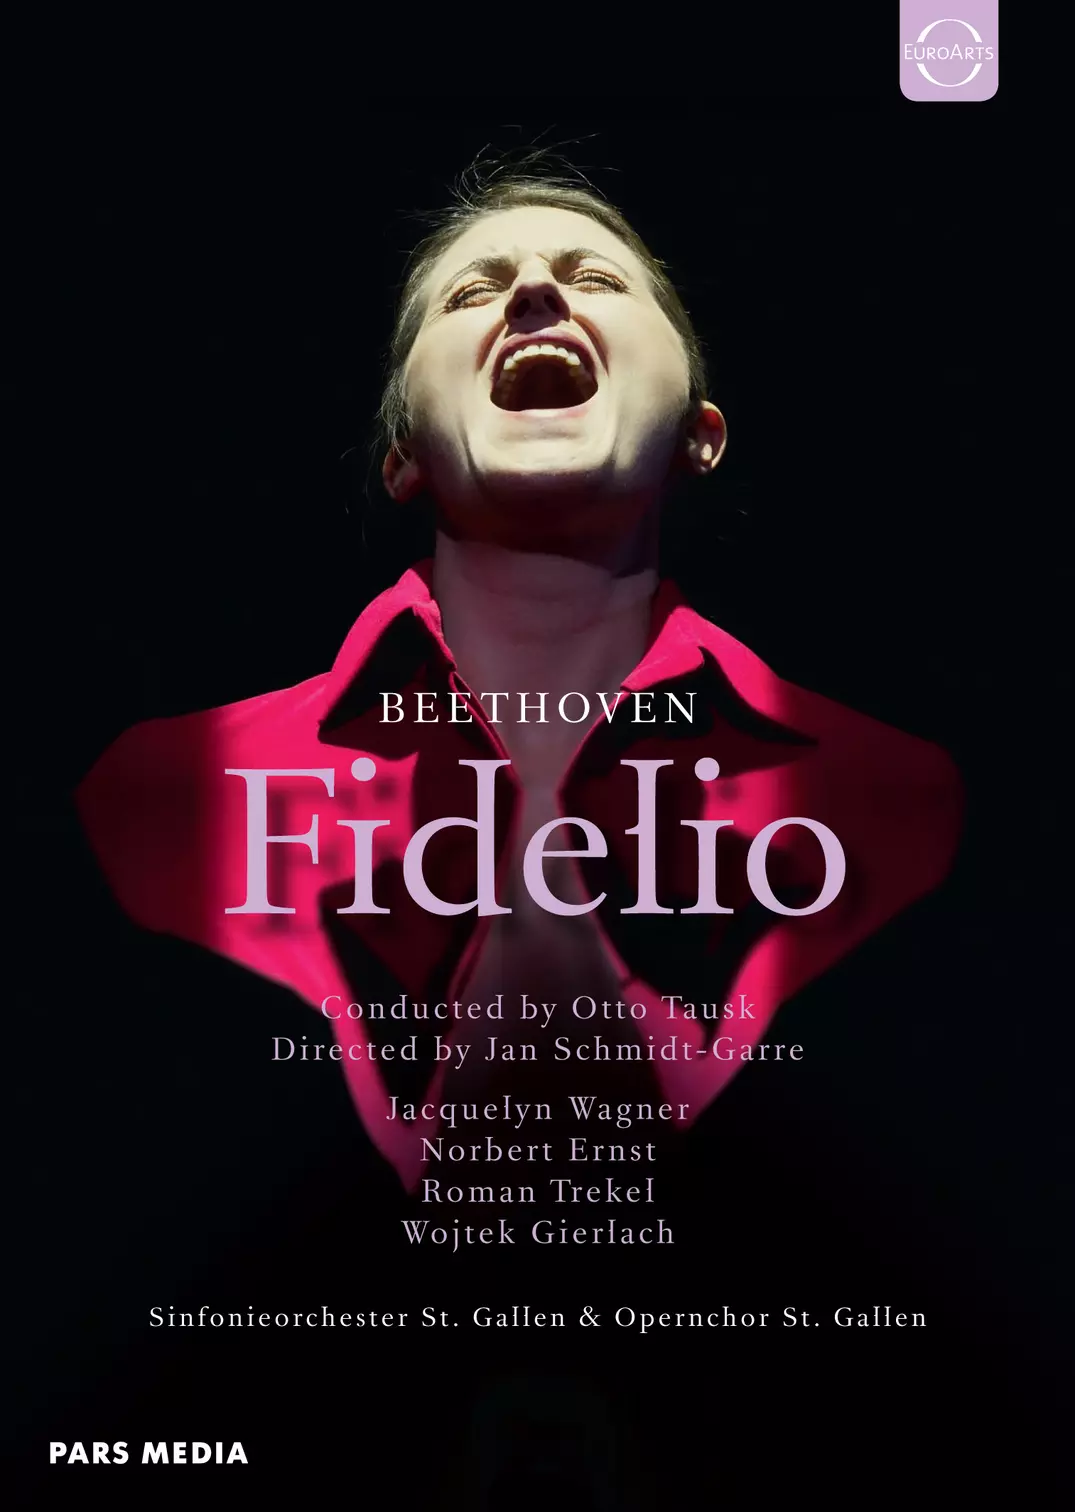 Fidelio - Opera St. Gallen